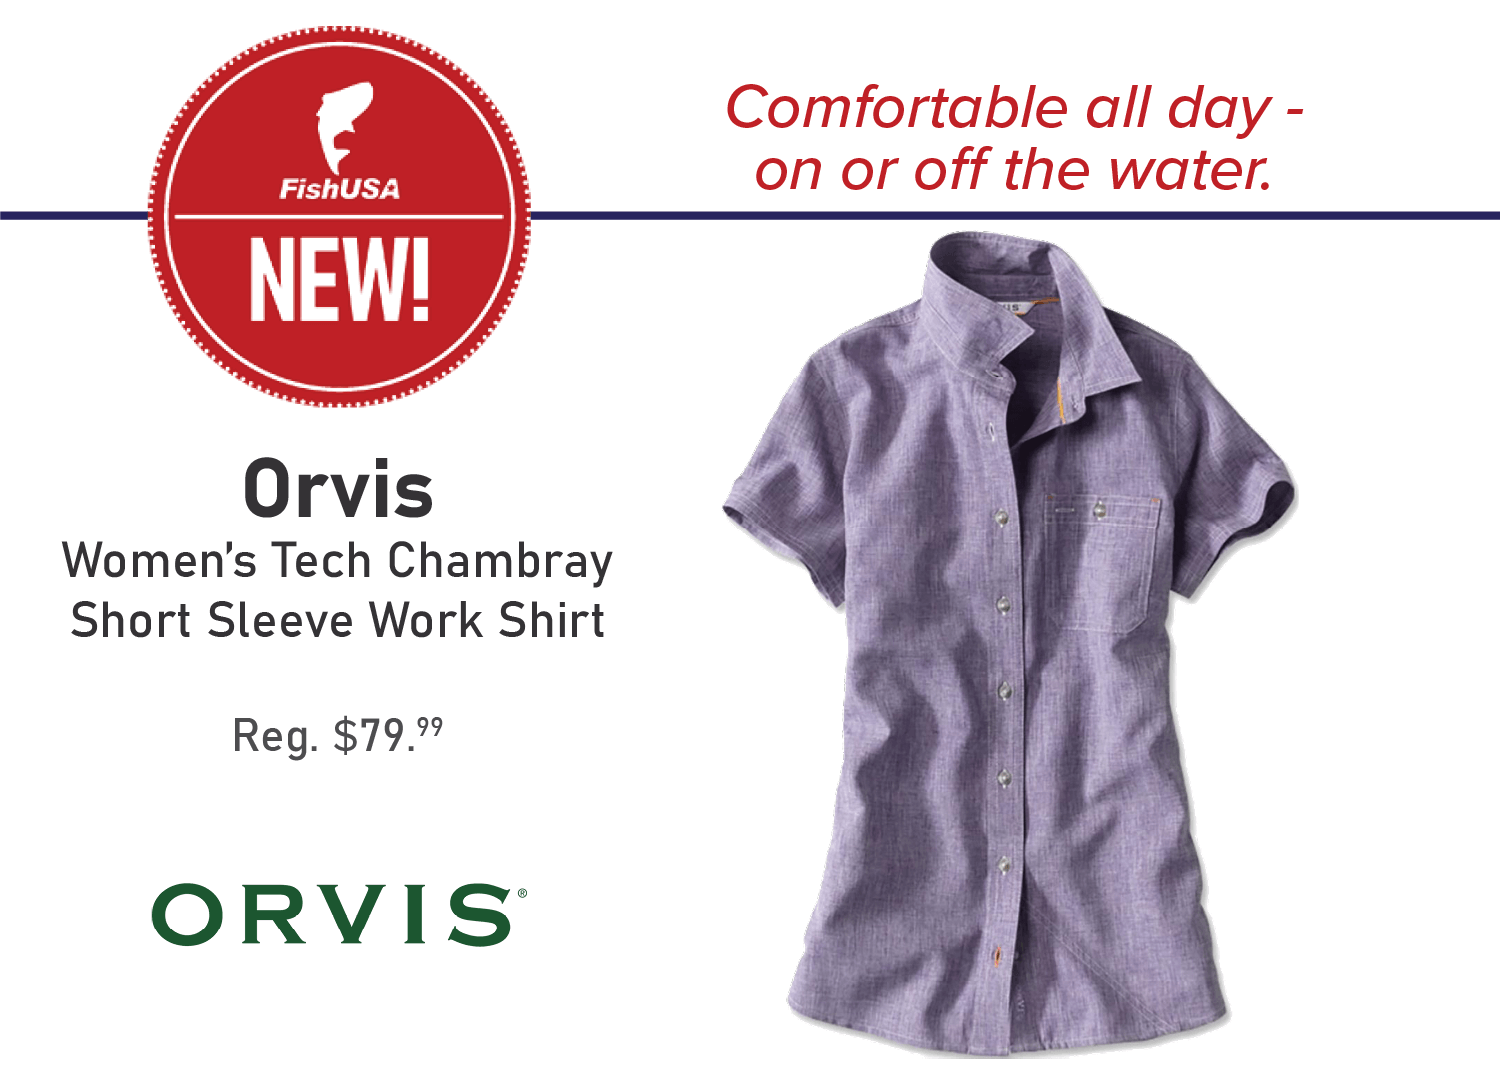 Orvis Women's Tech Chambray Short Sleeve Work Shirt